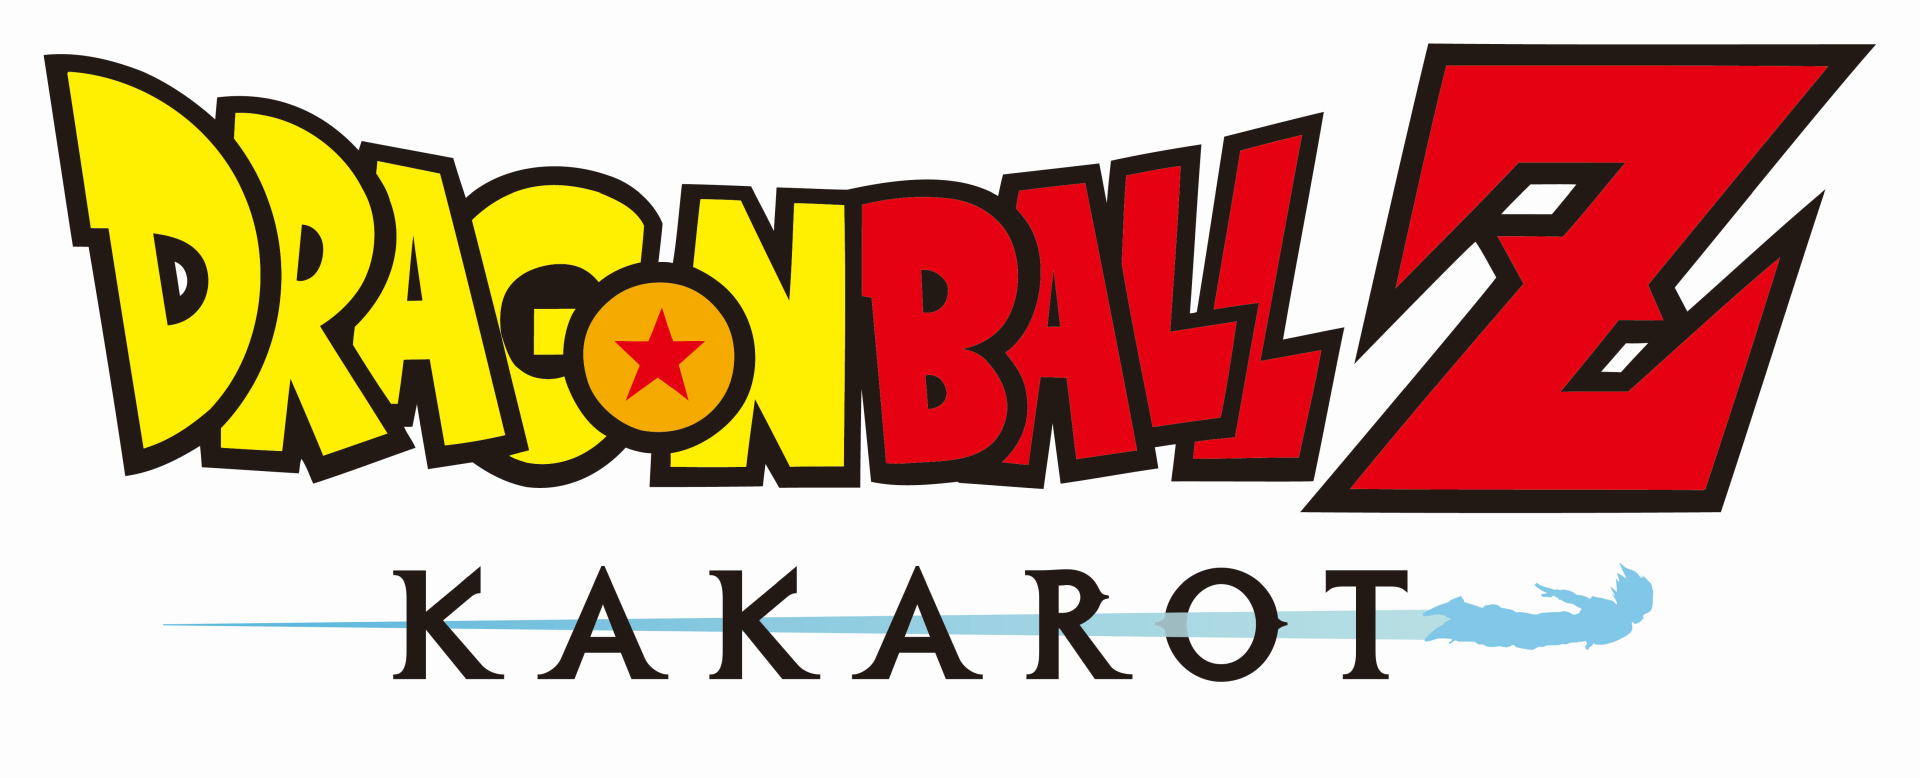 Dragon Ball Z Kakarot E3 2019 Preview #6